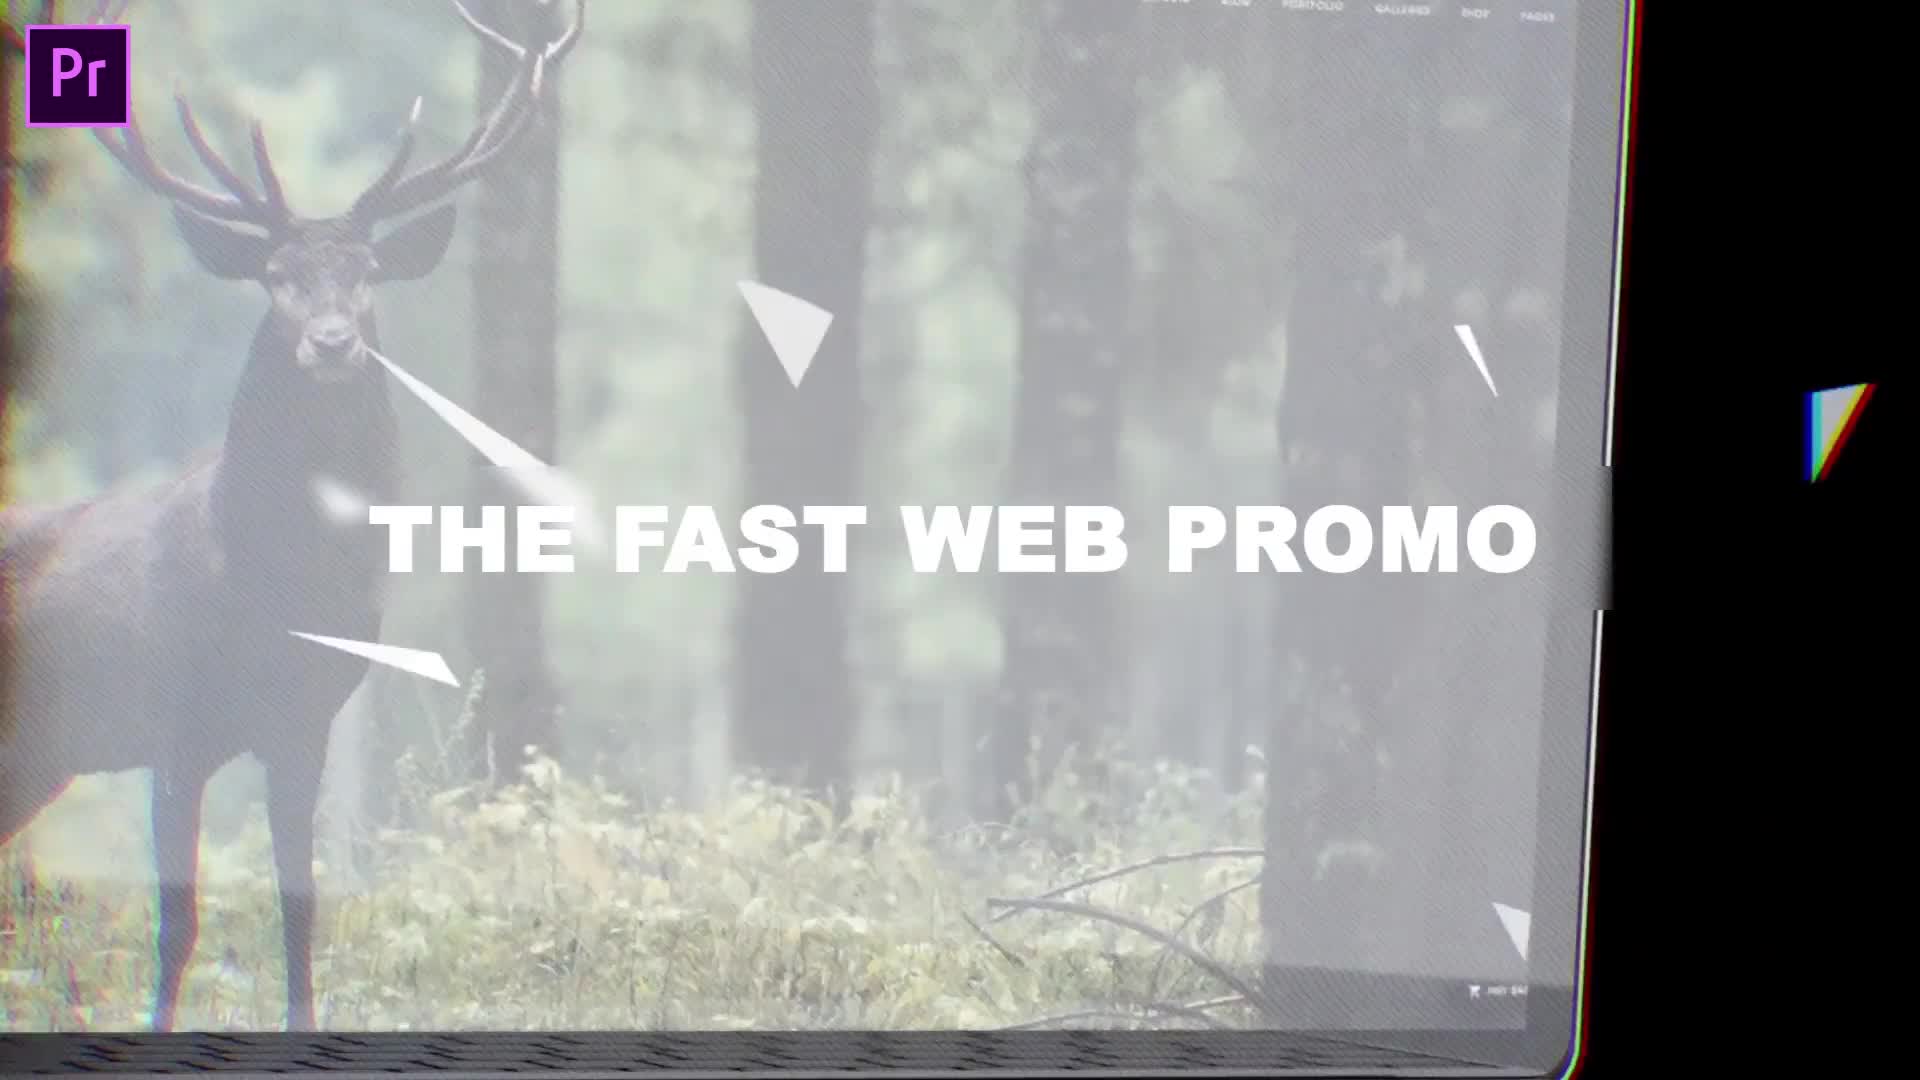 Fast Website Promo Premiere Pro version Videohive 33625280 Premiere Pro Image 1